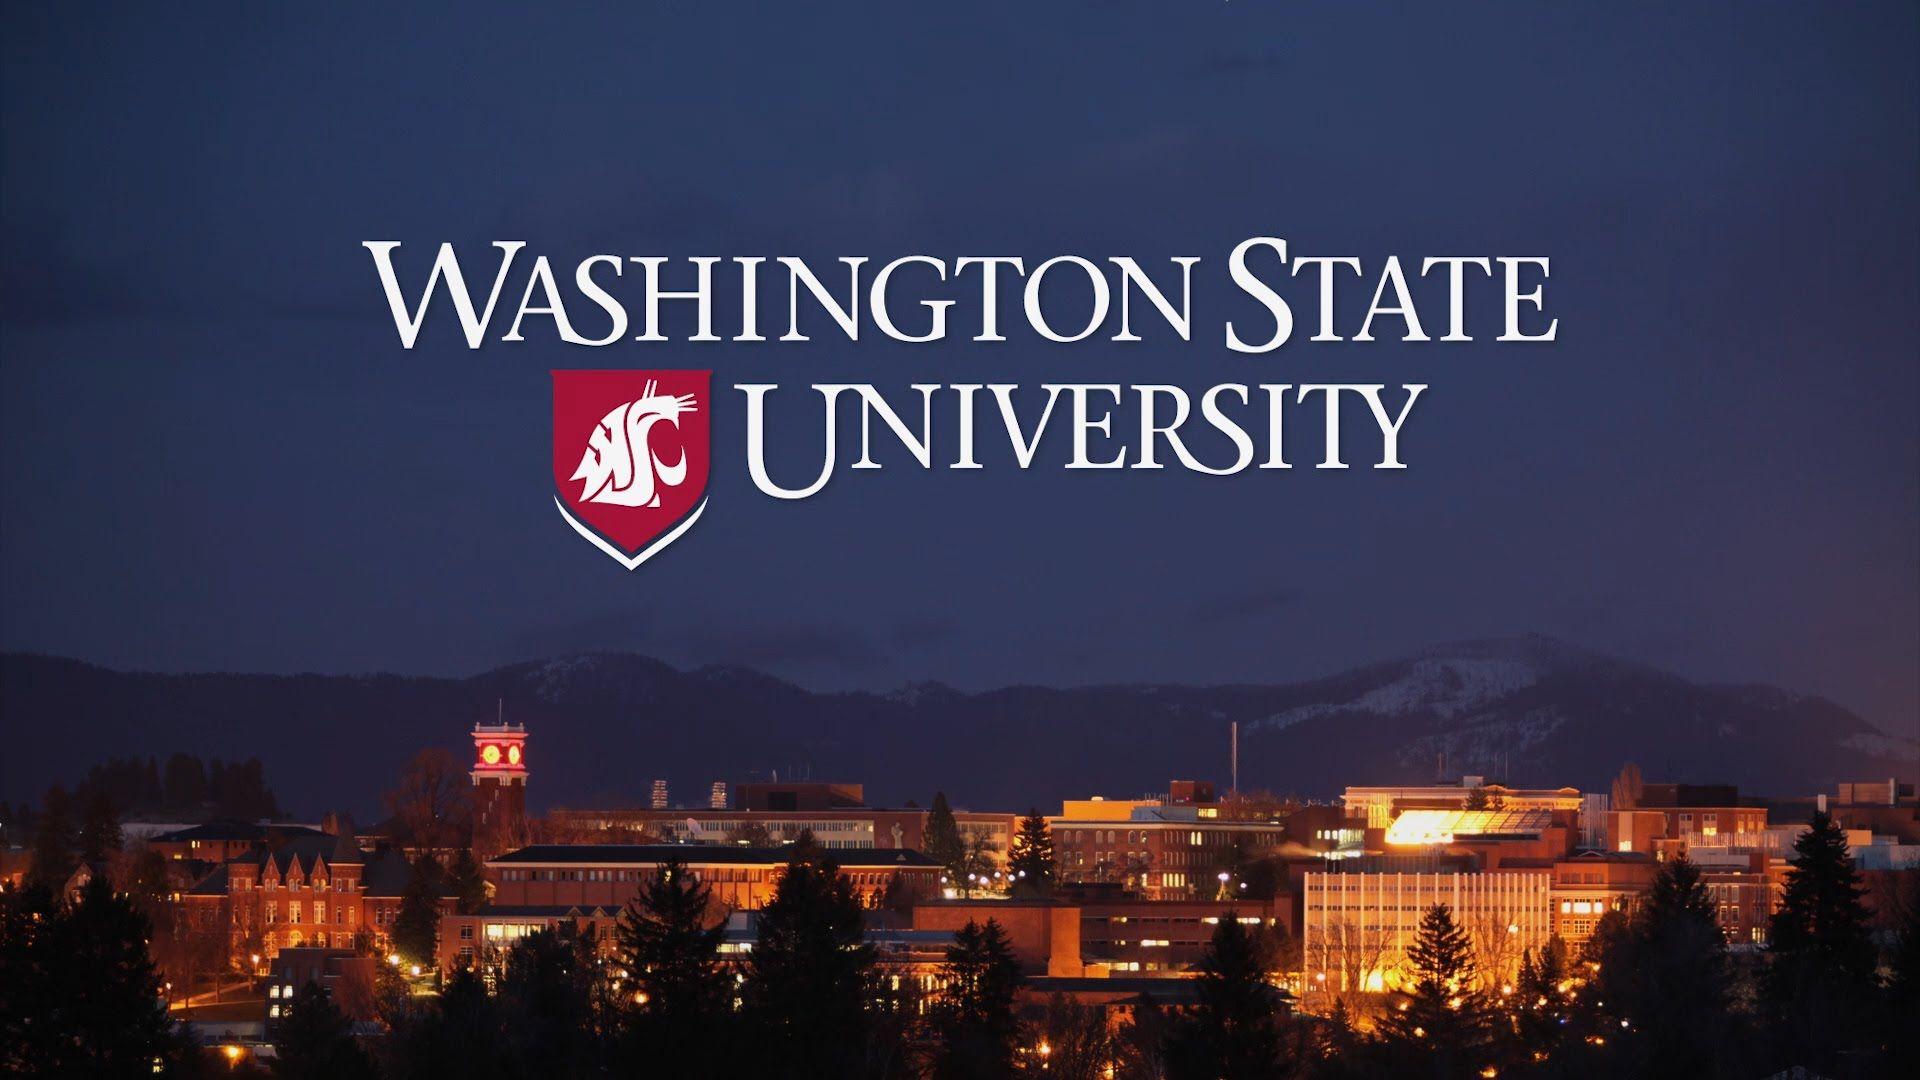 Experience Washington State University